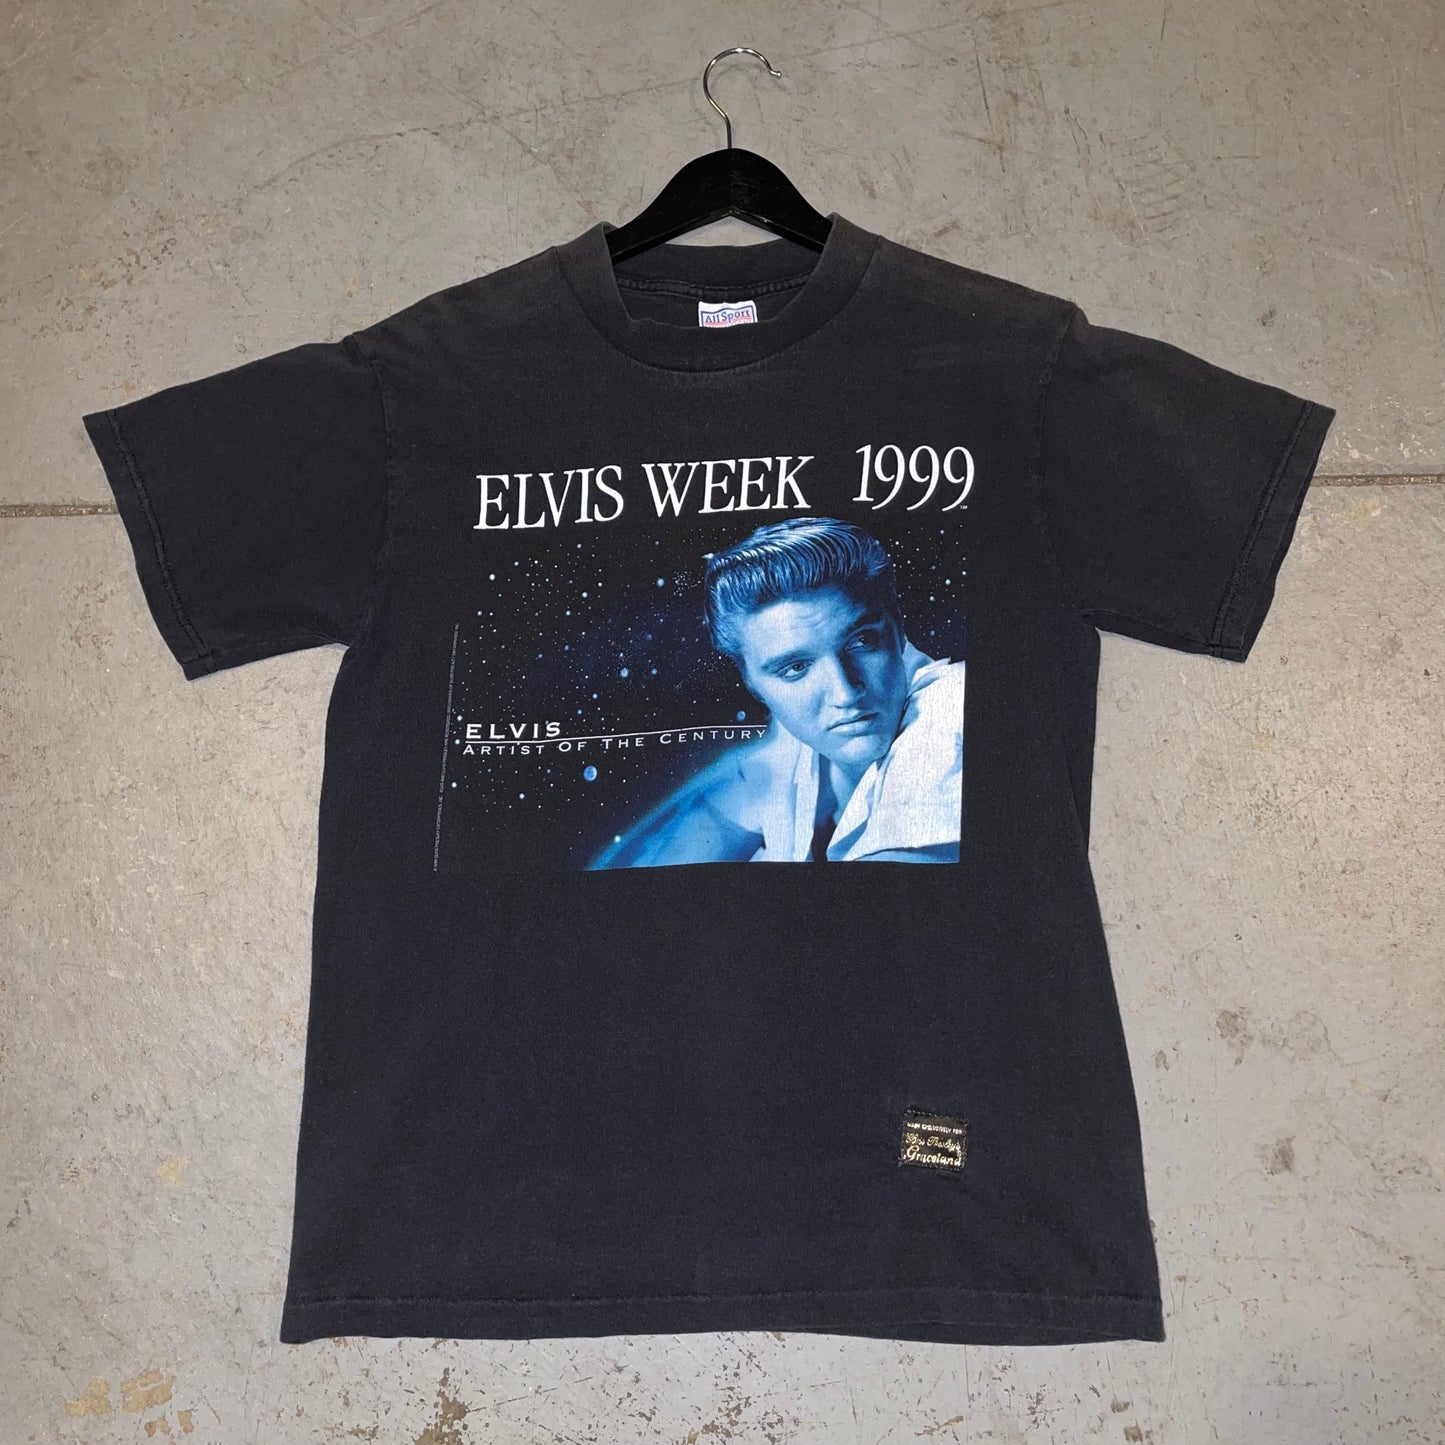 Vintage 1999 Elvis Week T-shirt. Sz M